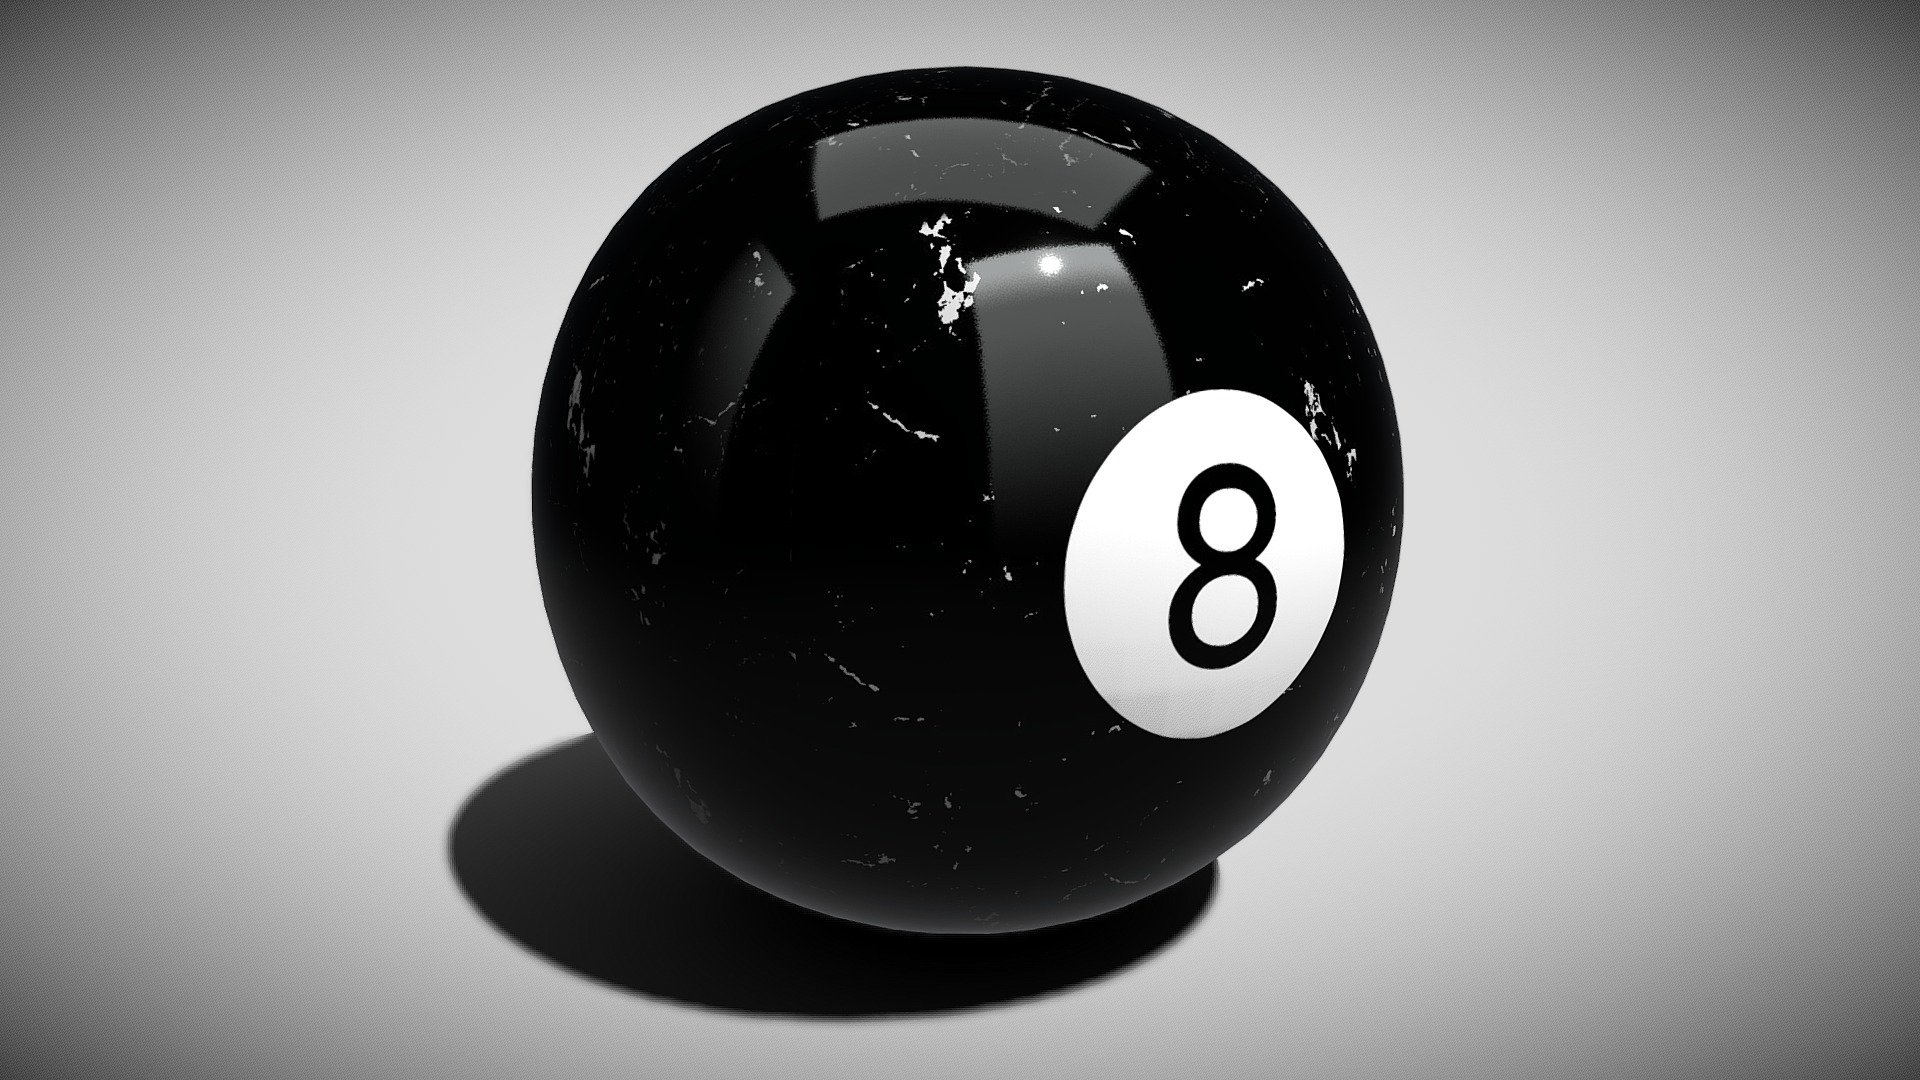 Where Did the Idea for the Magic 8 Ball Come From? - Britannica